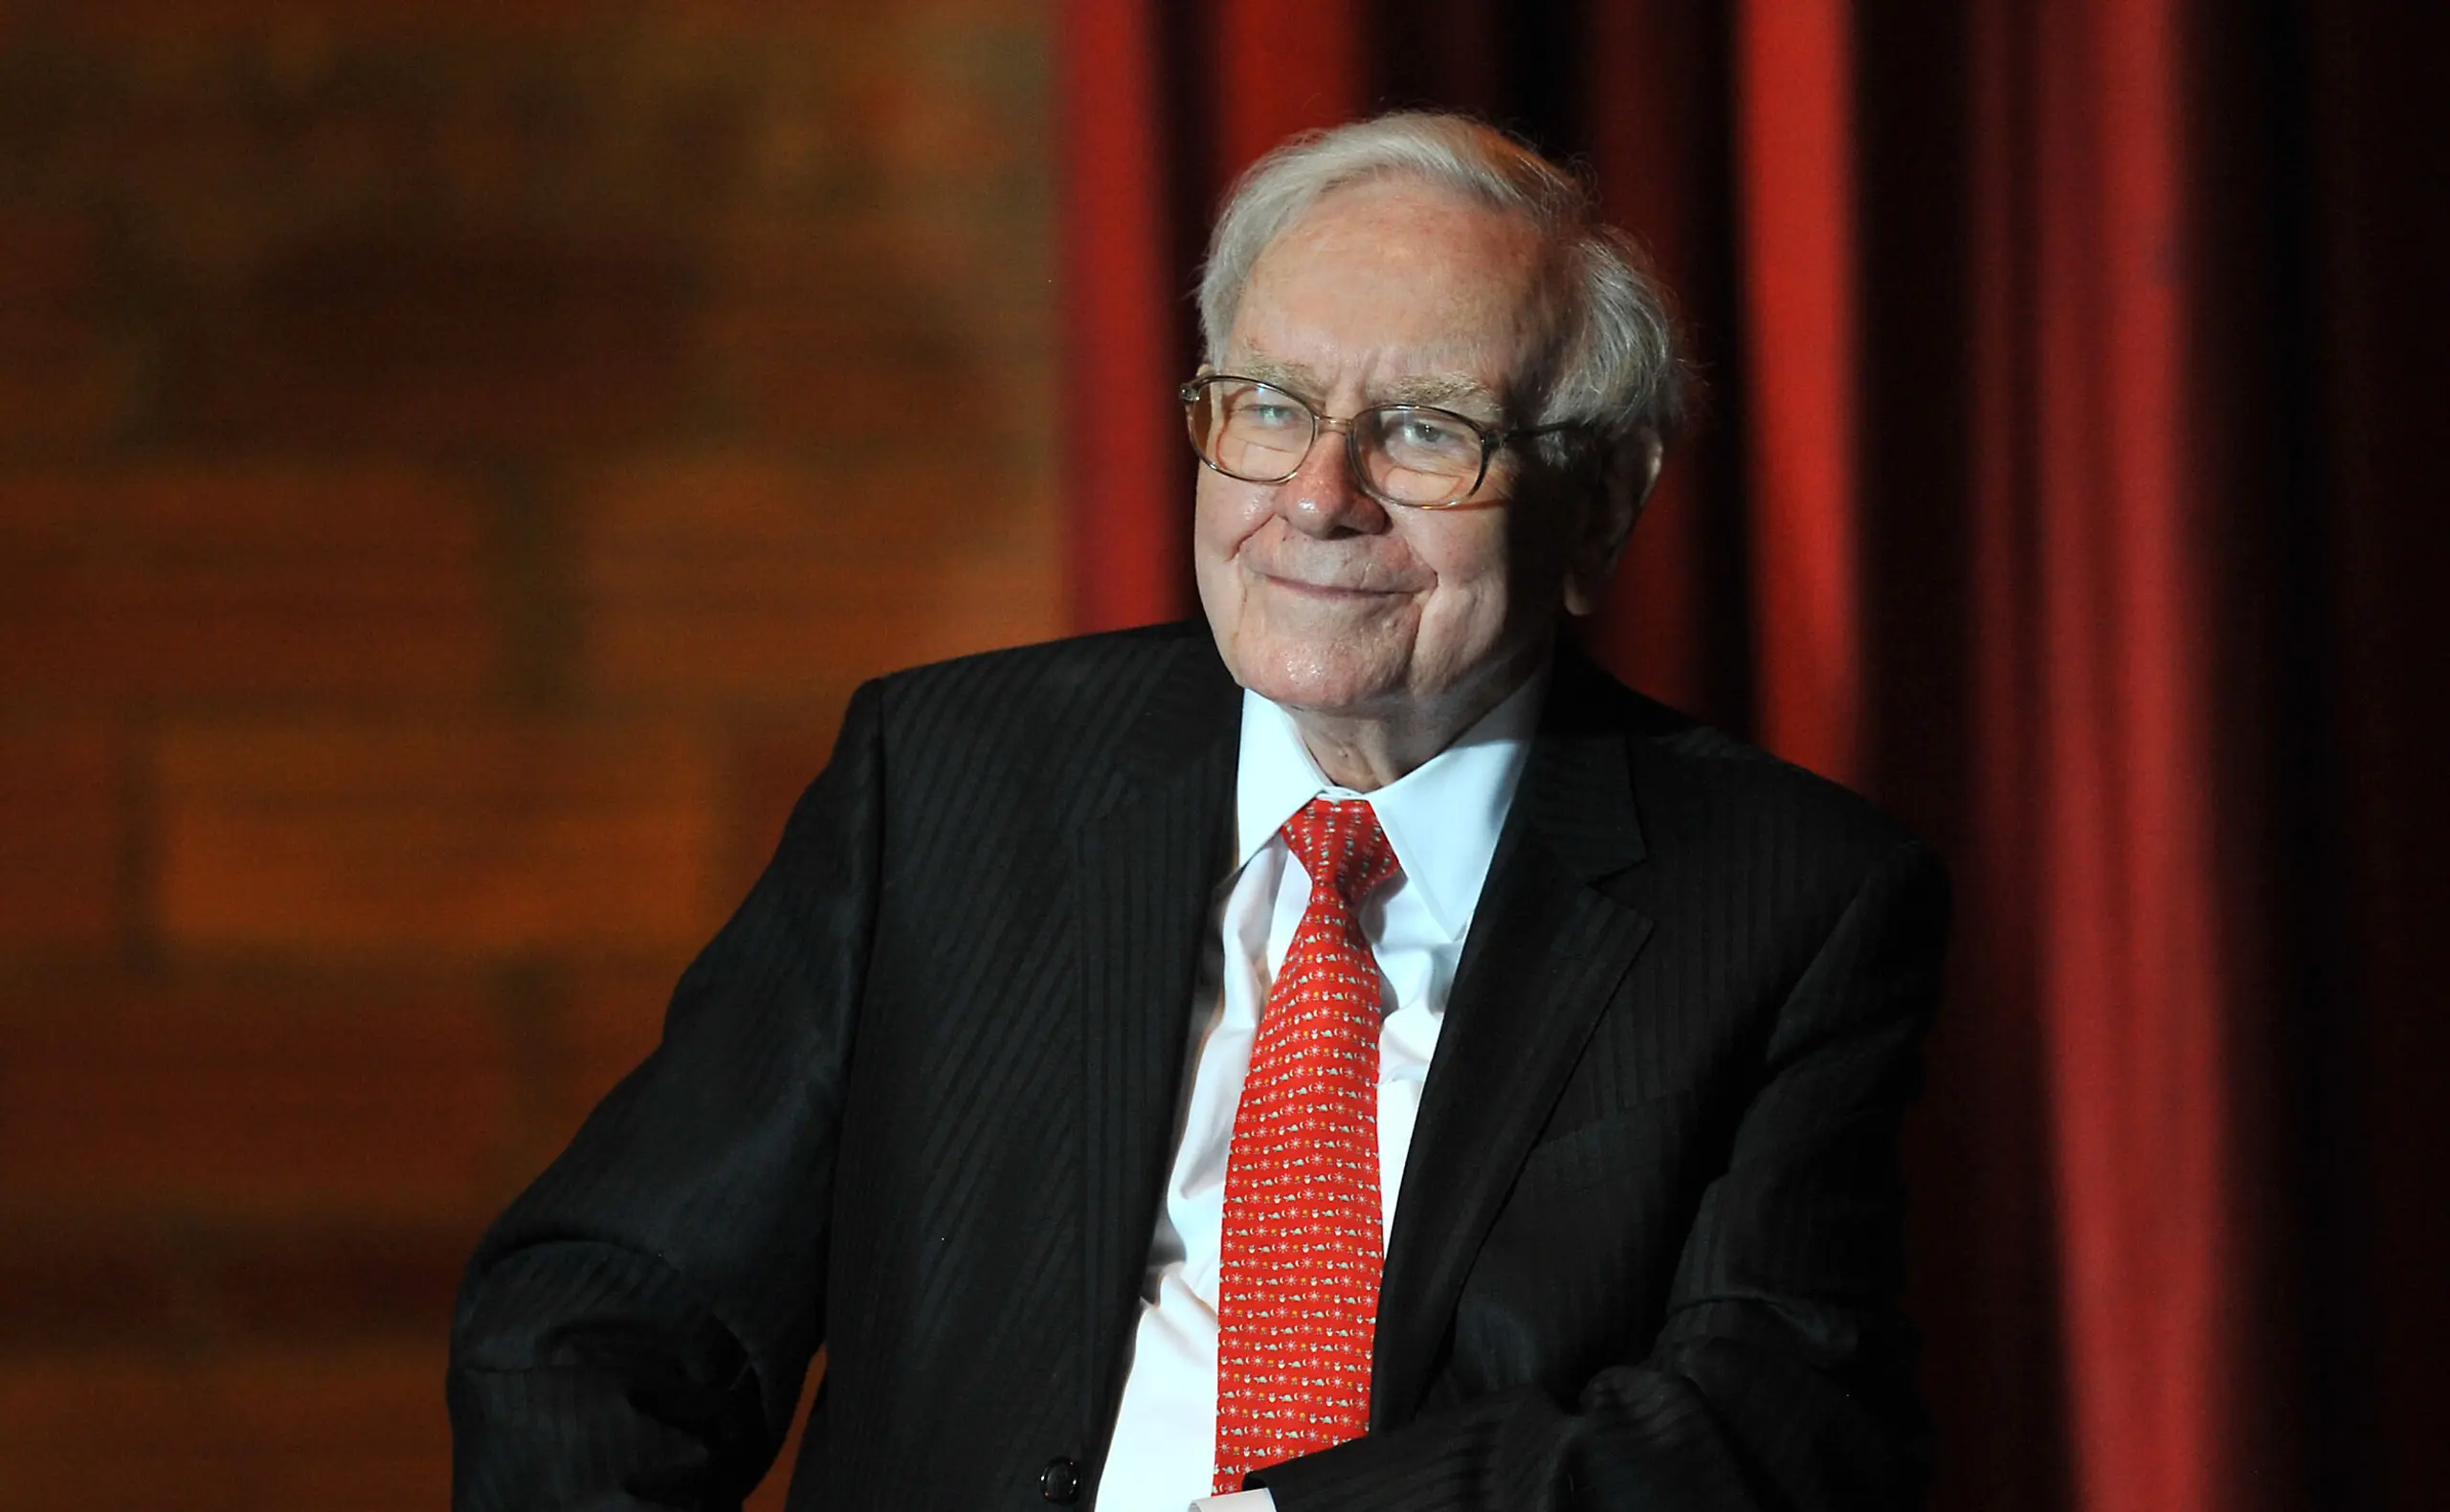 Warren Buffett, legendärer Investor, Berkshire Hathaway Chef und einer der reichsten Menschen der Welt.